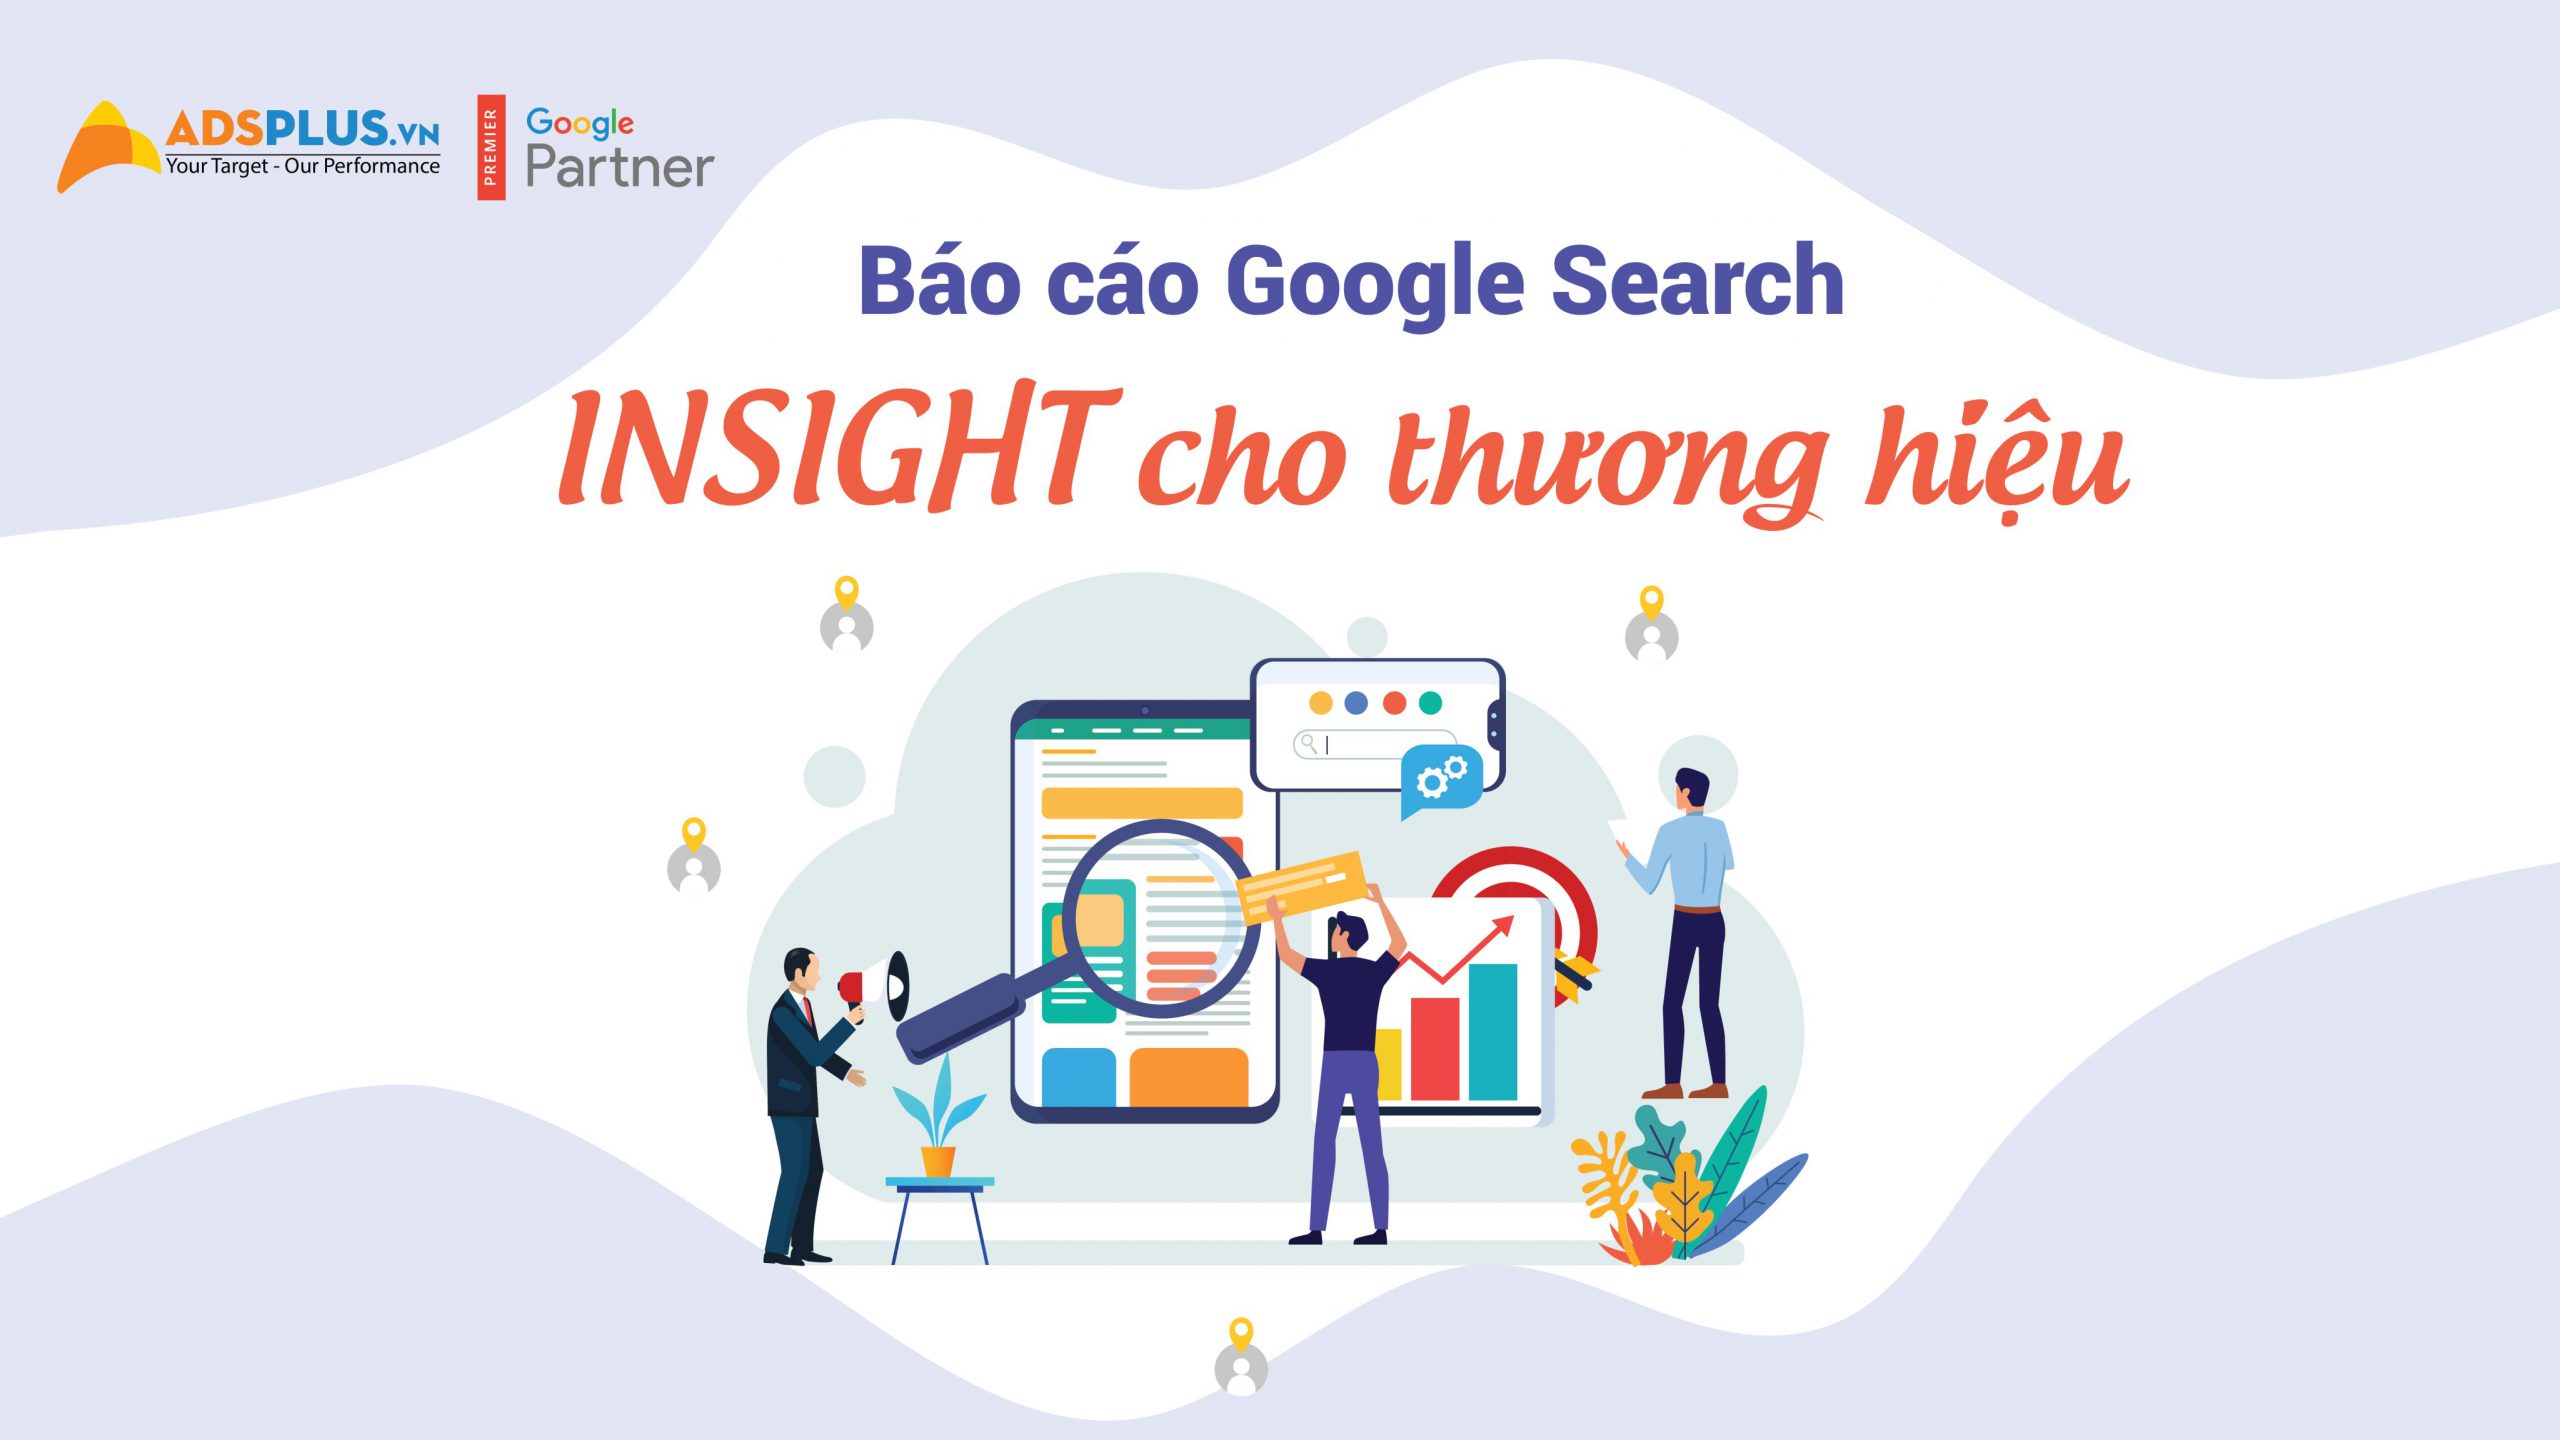 Báo cáo Google Search Insight cho thương hiệu